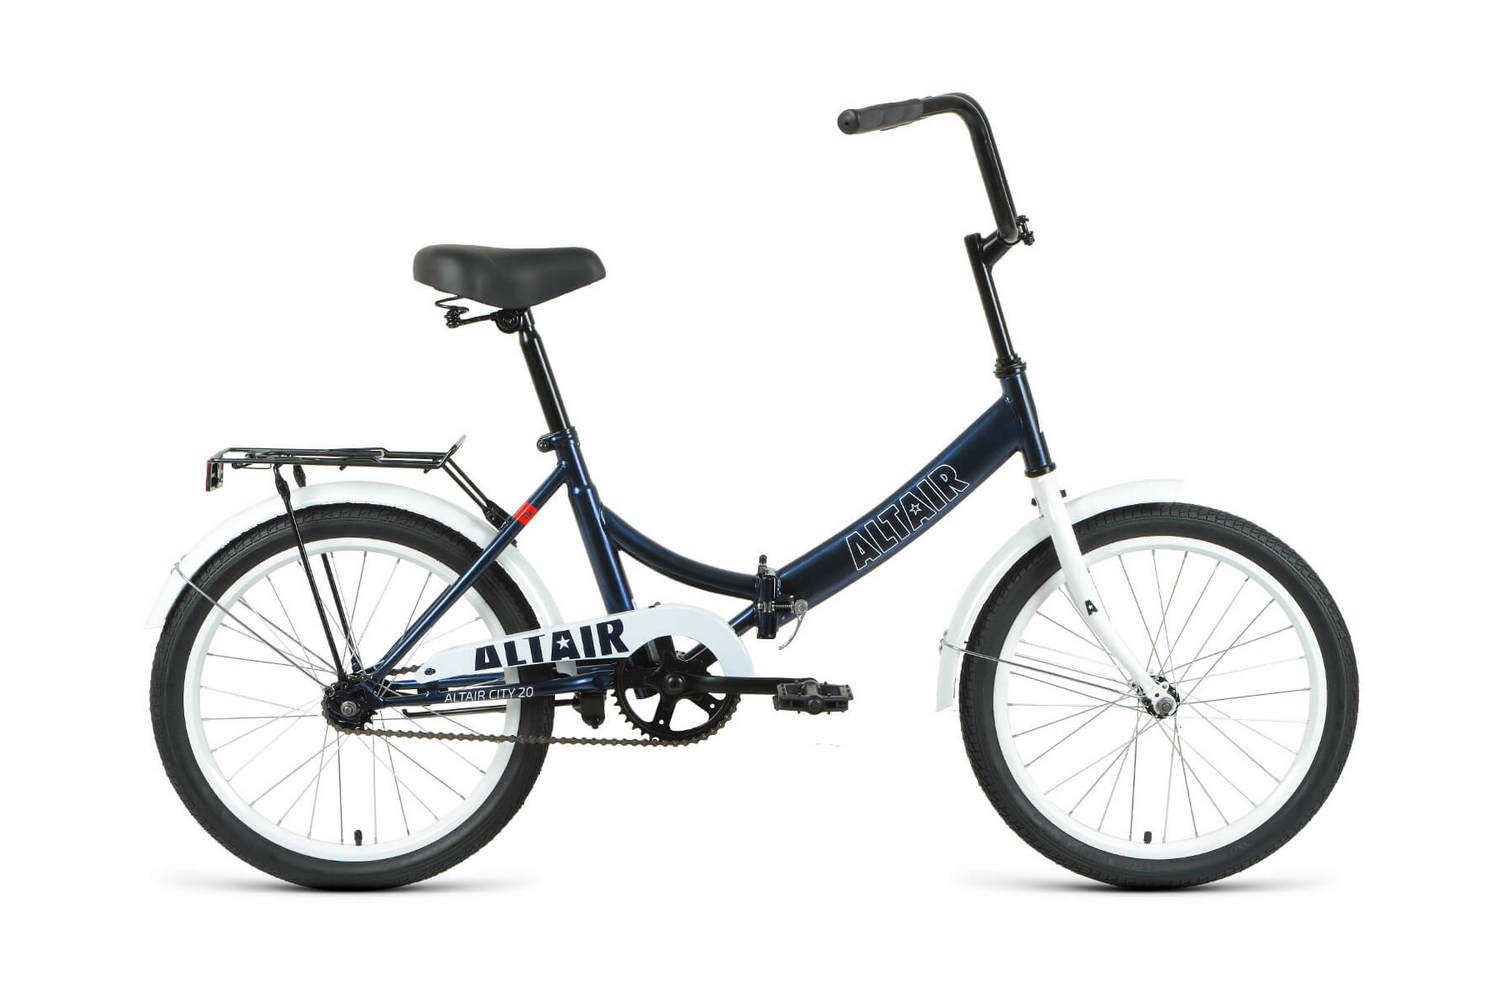 Складной велосипед Altair City 20, год 2022, цвет Синий-Белый, ростовка 14